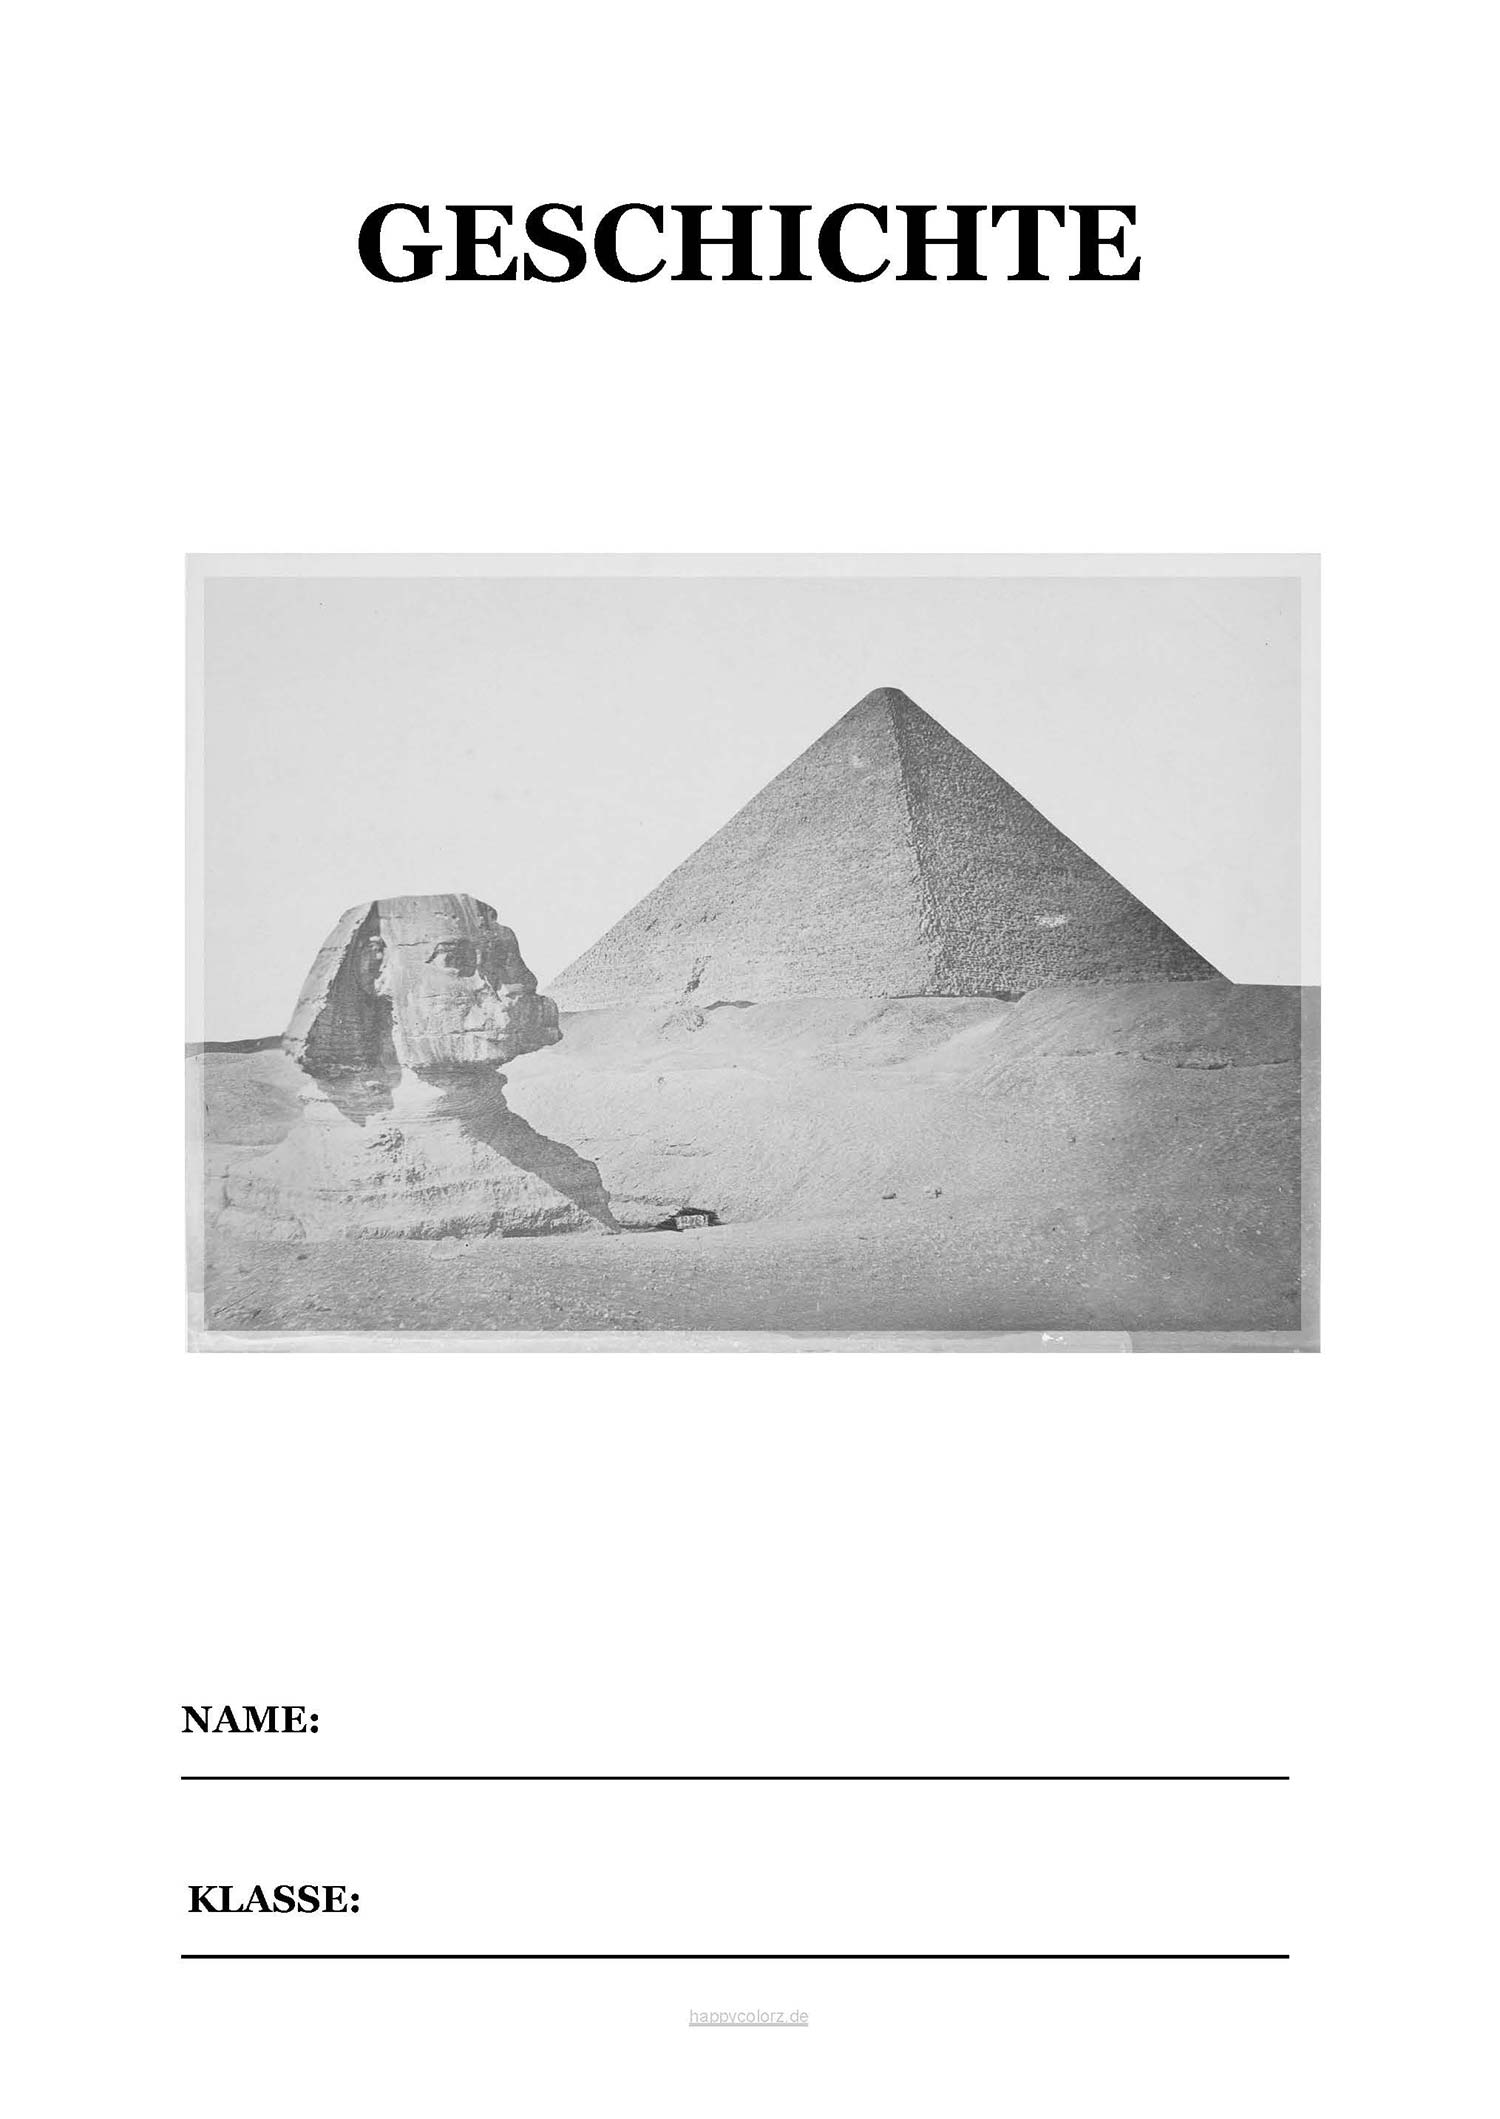 Geschichte Deckblatt mit Pyramide zum kostenlosen ausdrucken (pdf)